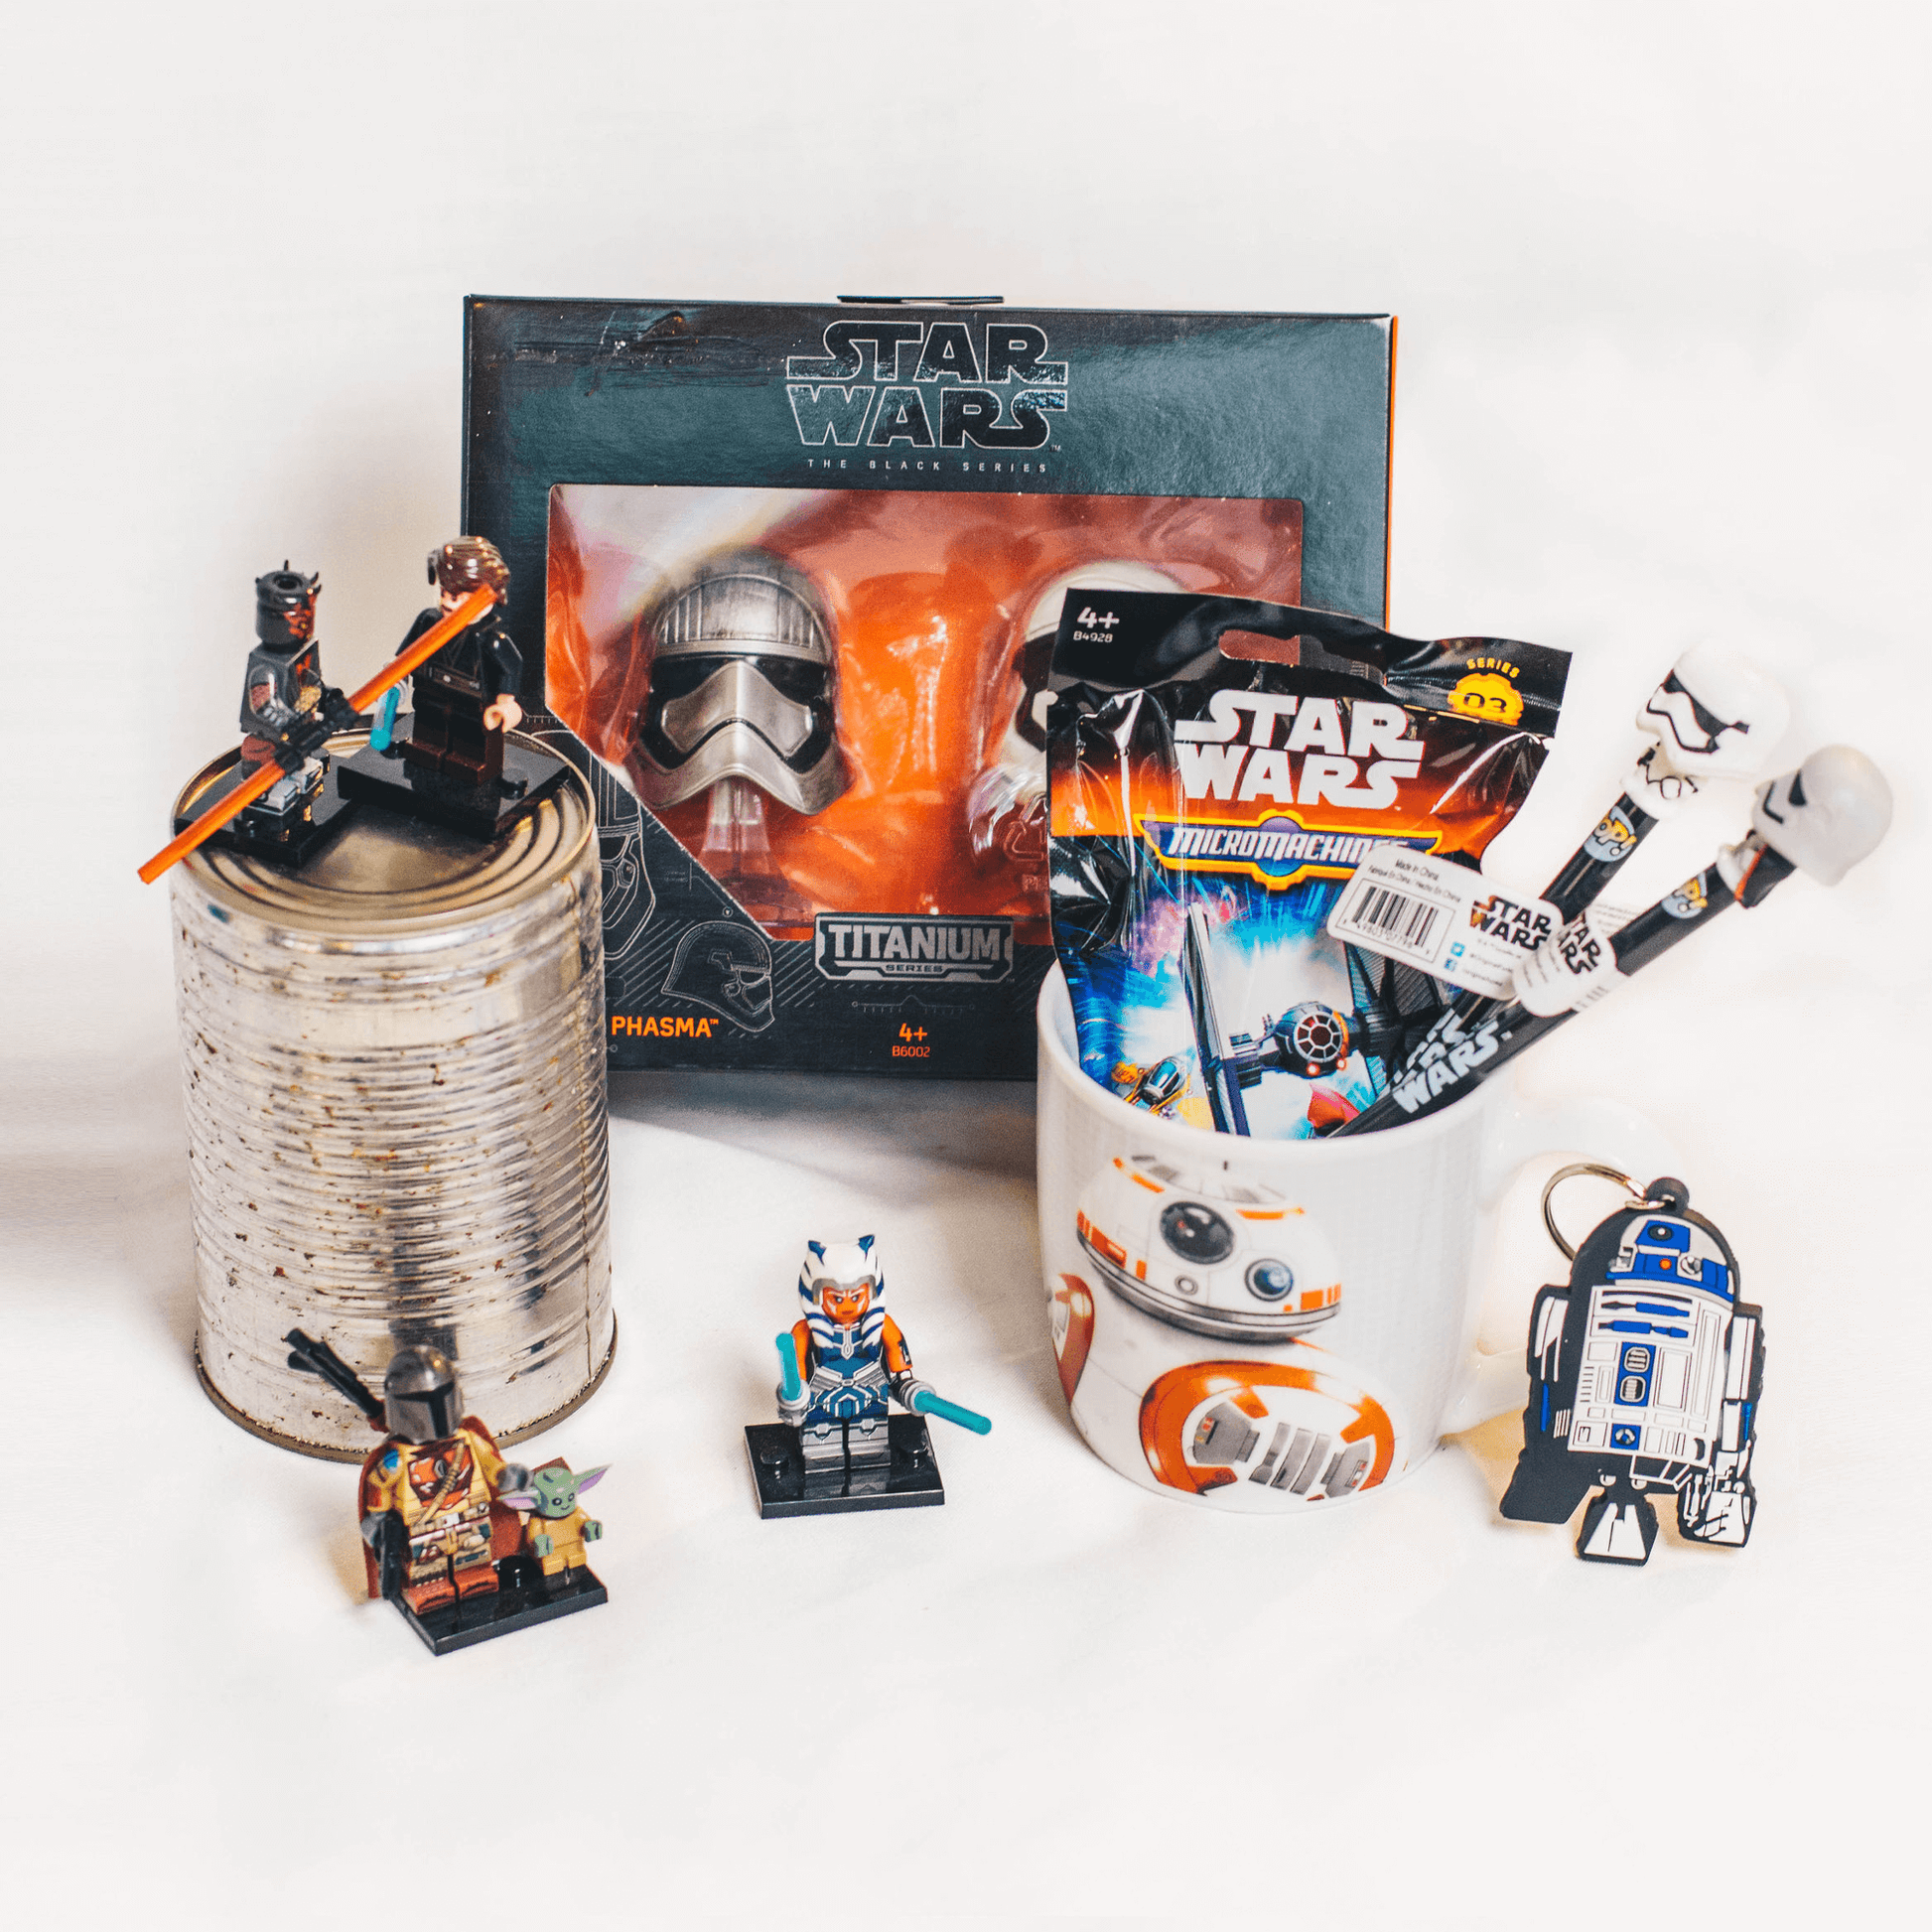 Star Wars nerd gift box